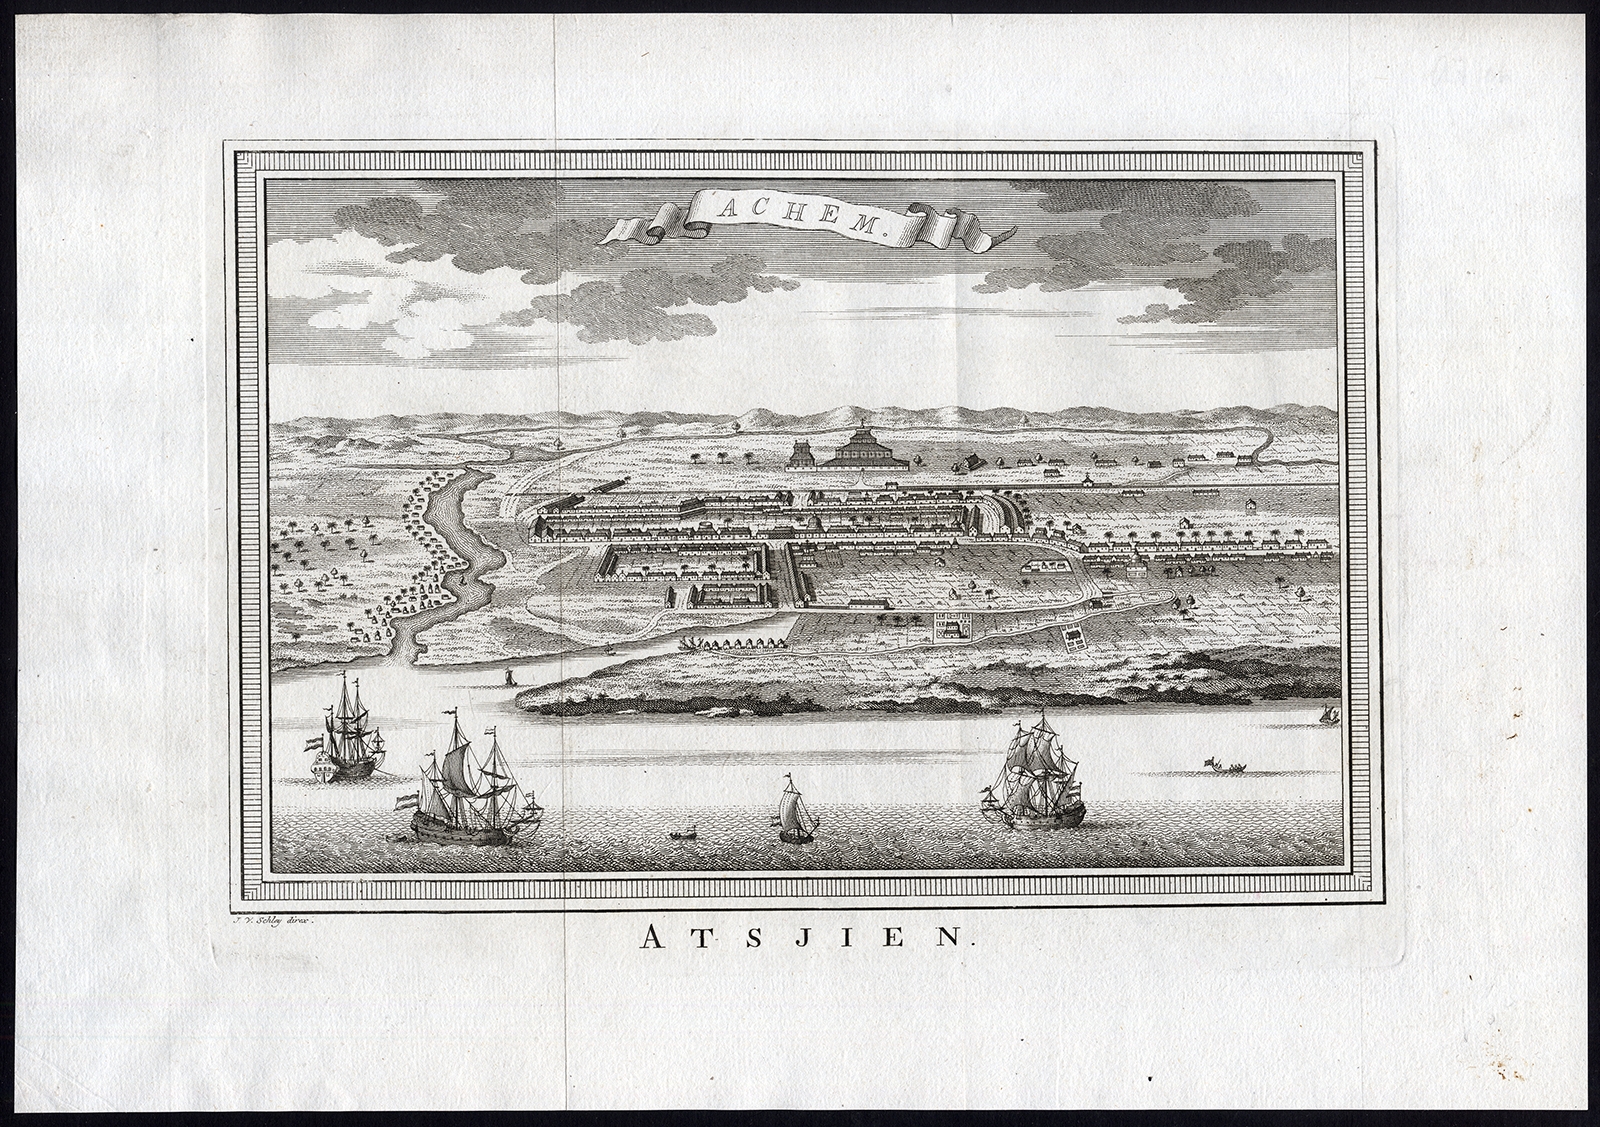 Antique Print of Atjeh by Van der Schley (1756)